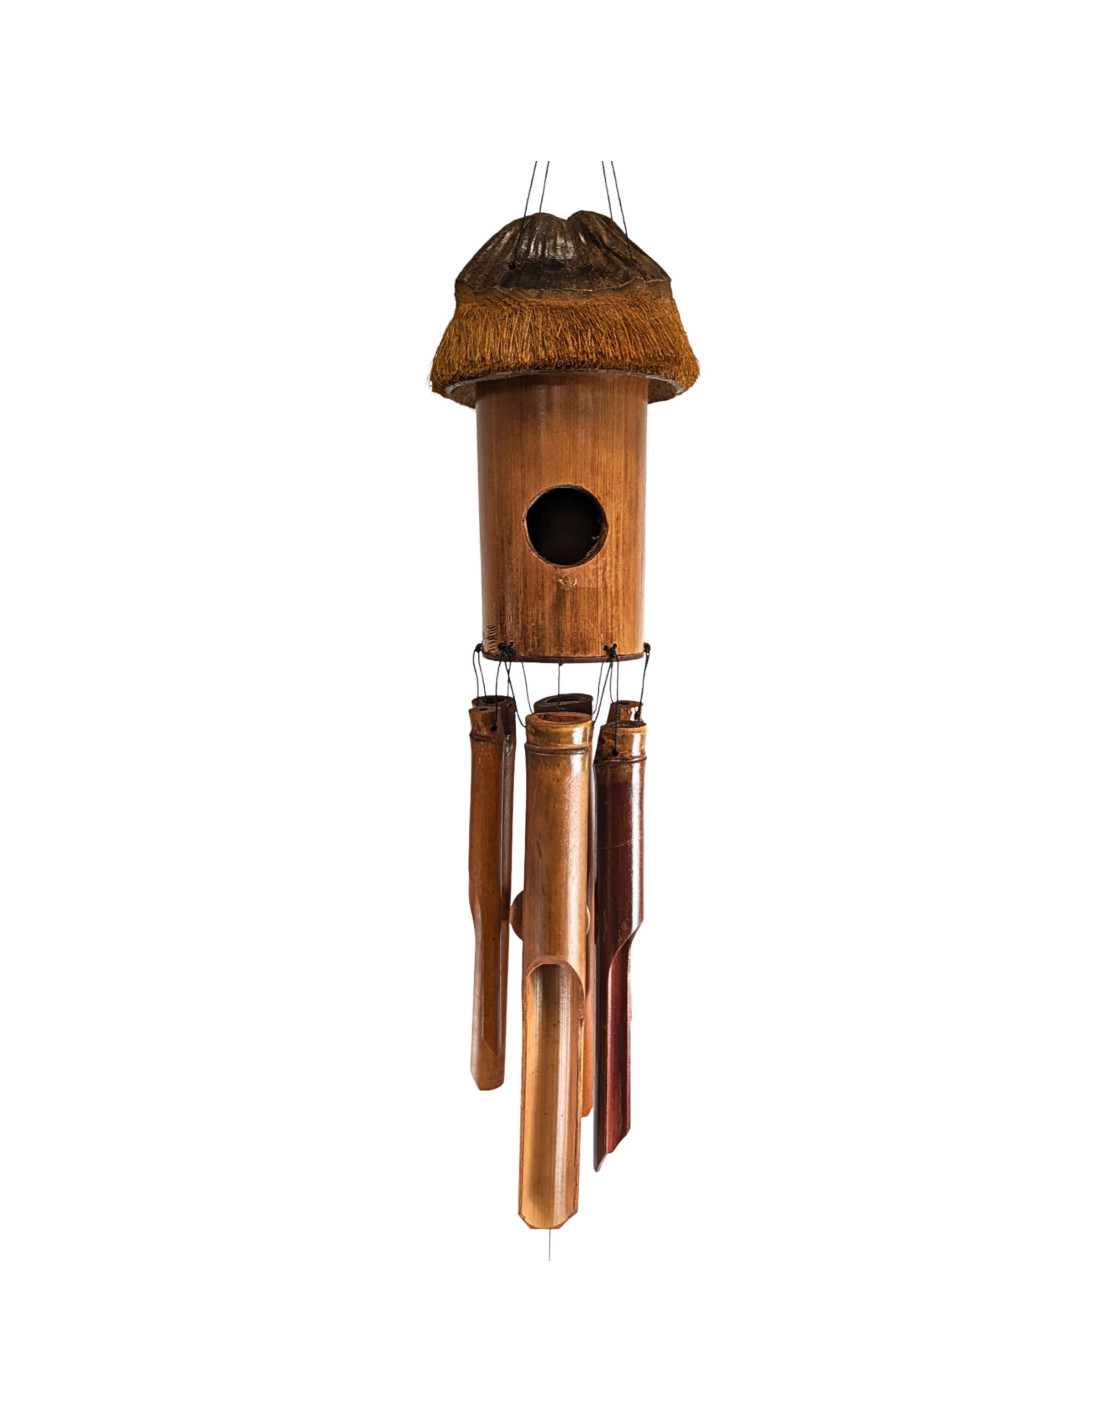 Carillon à vent en Bambou - Chapeau en Noix de Coco Poilue